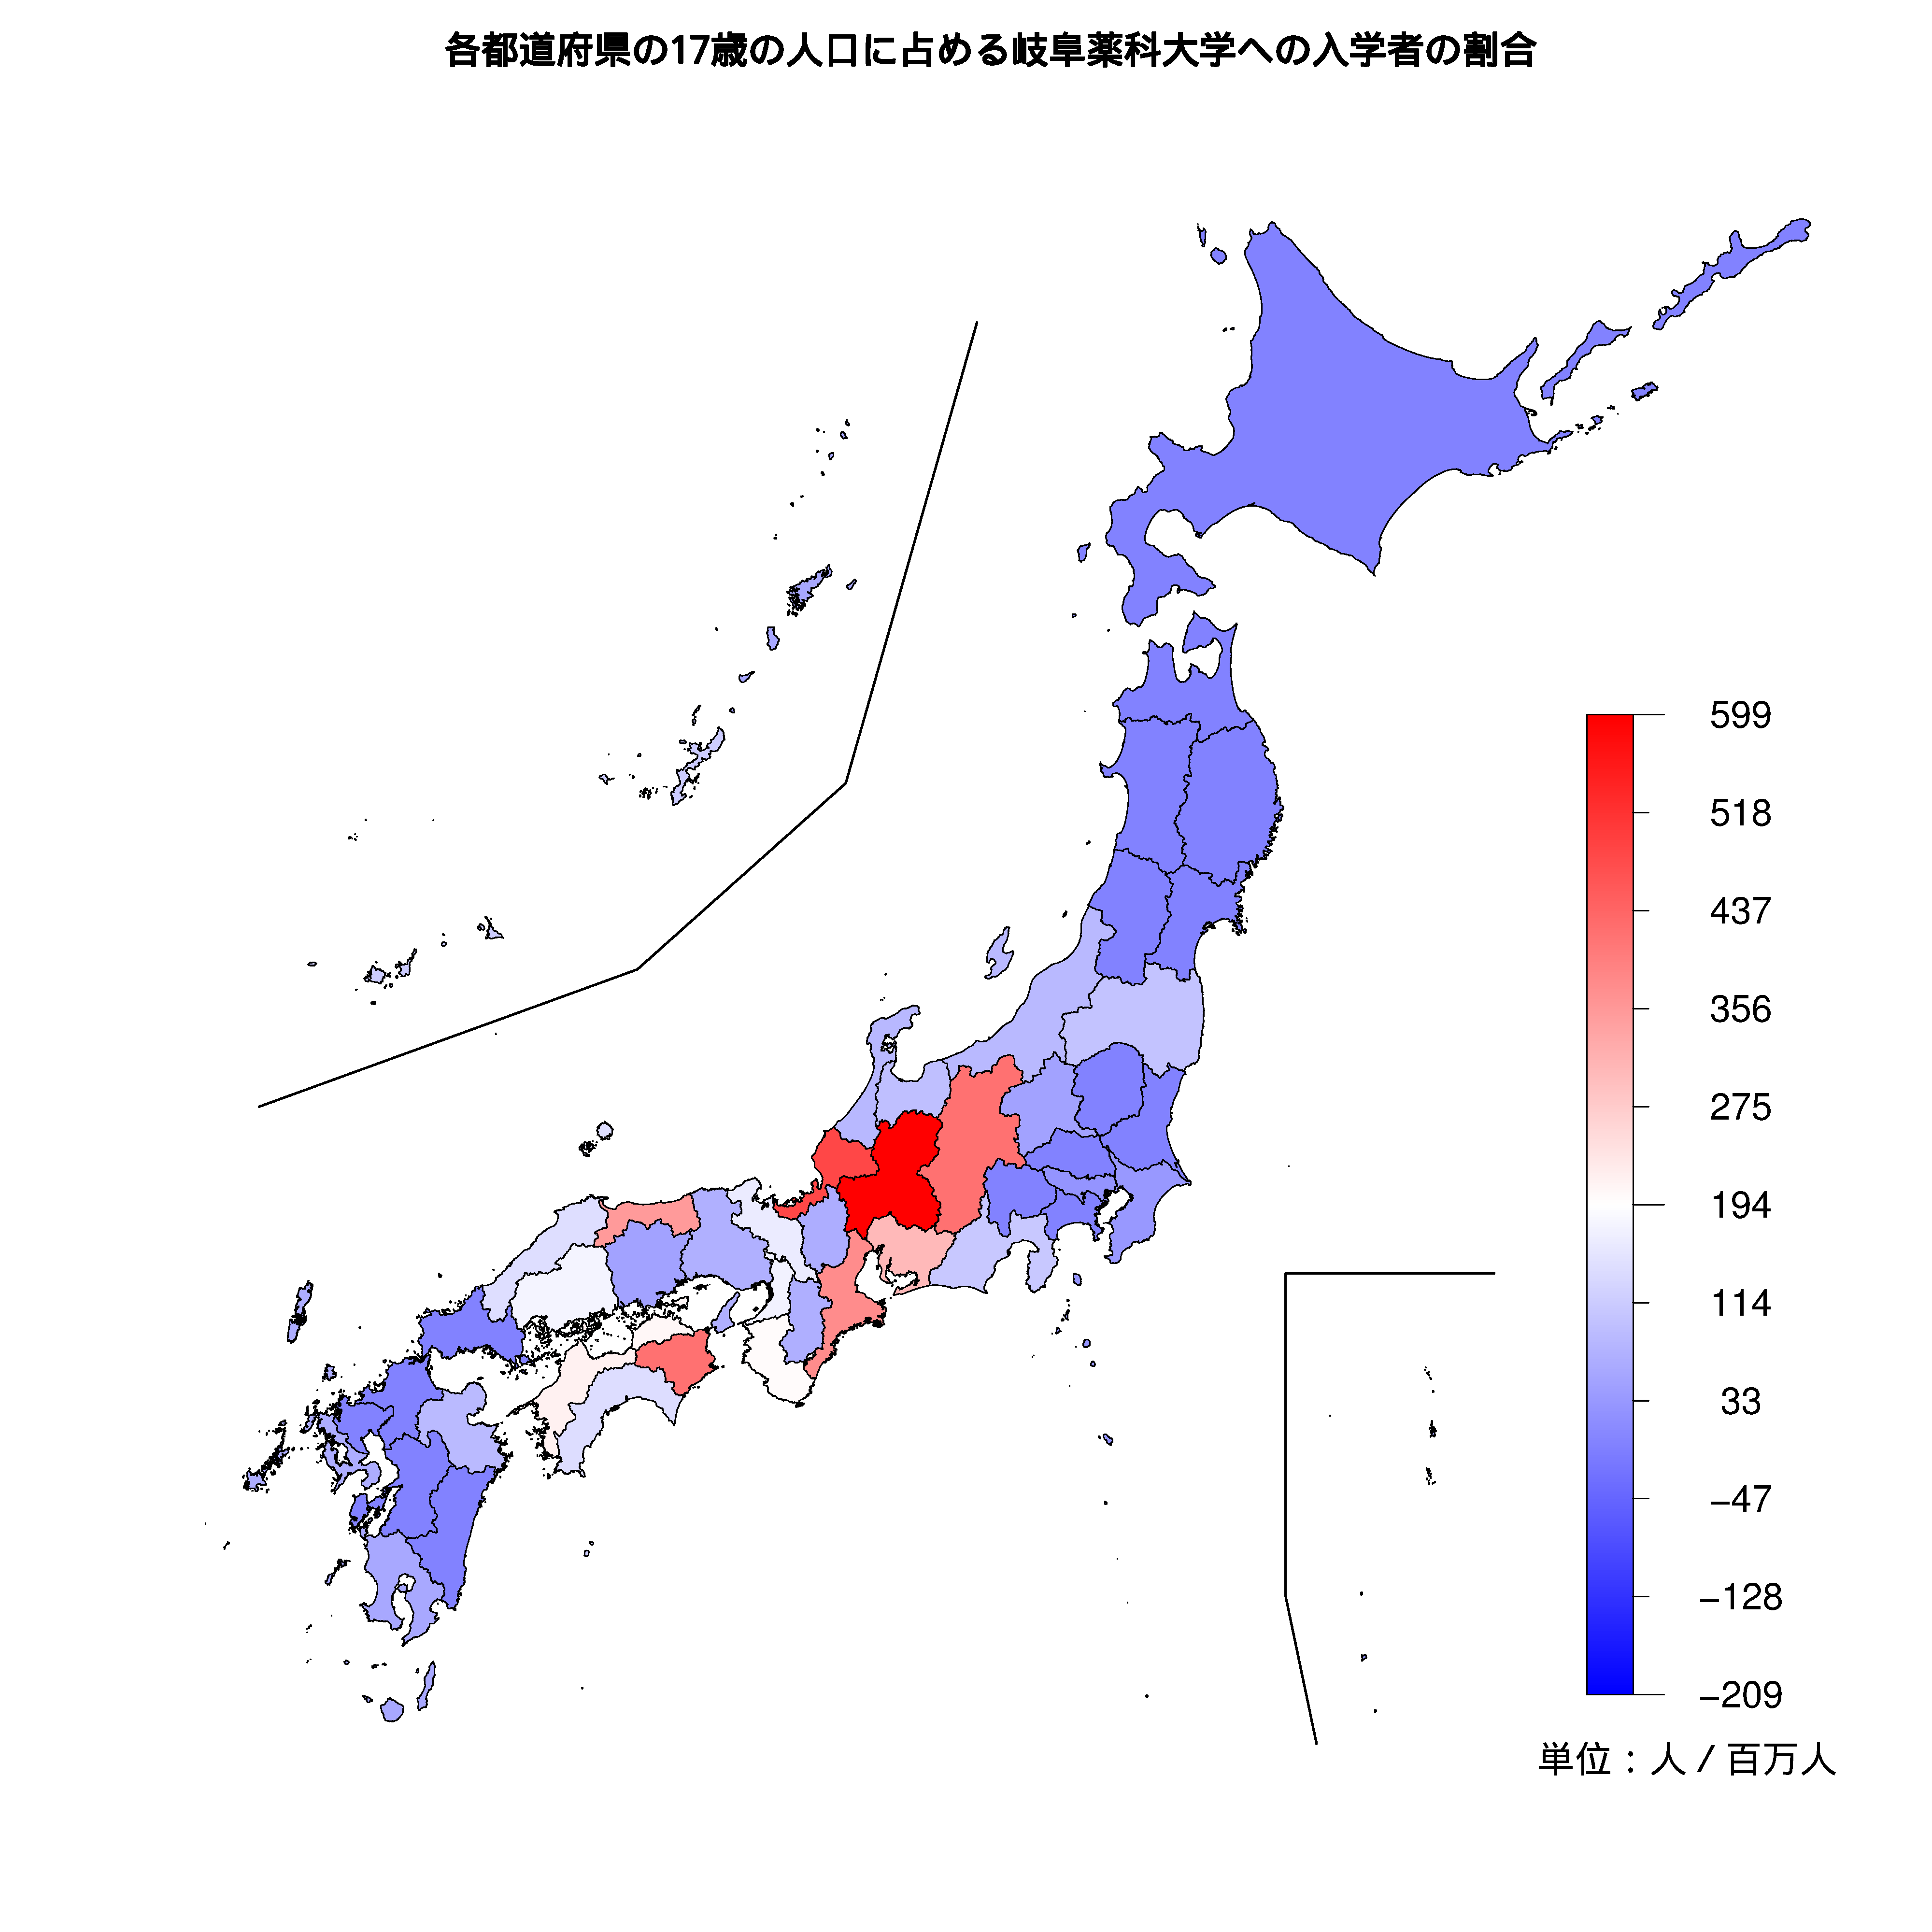 岐阜薬科大学への入学者が多い都道府県の色分け地図